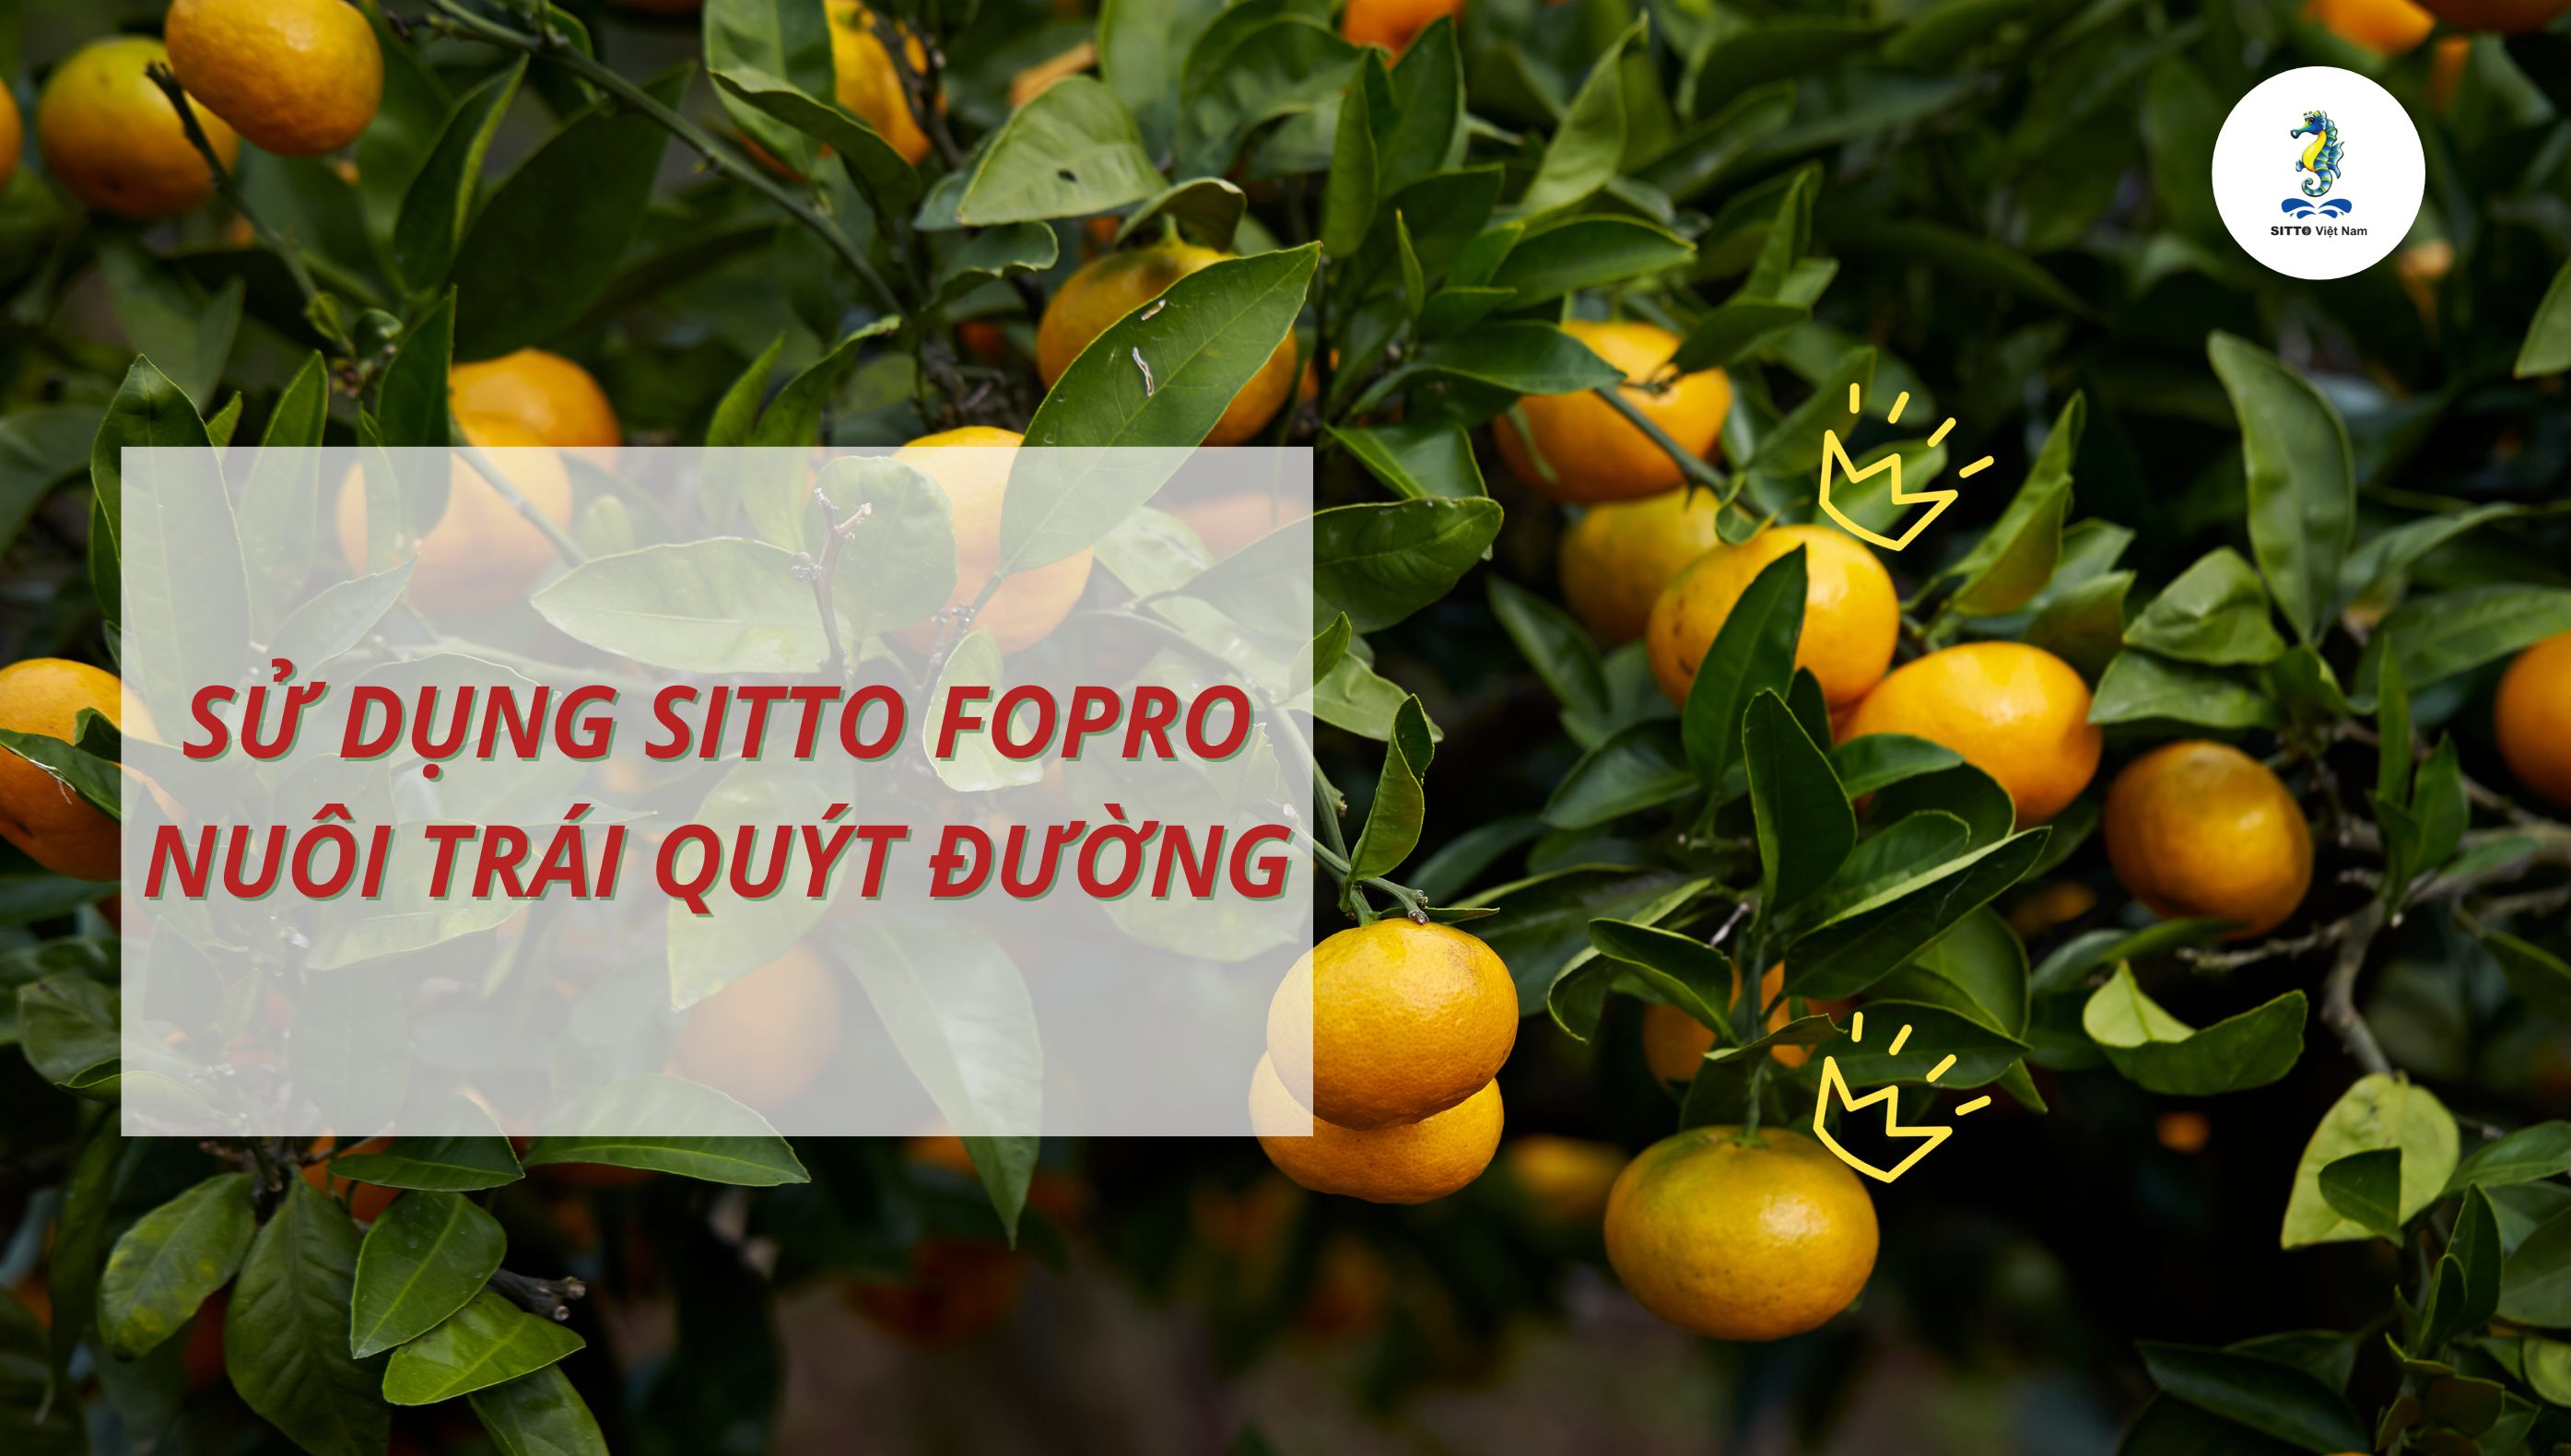 Sử dụng Sitto Fopro nuôi trái quýt đường tại Lai Vung – Đồng Tháp